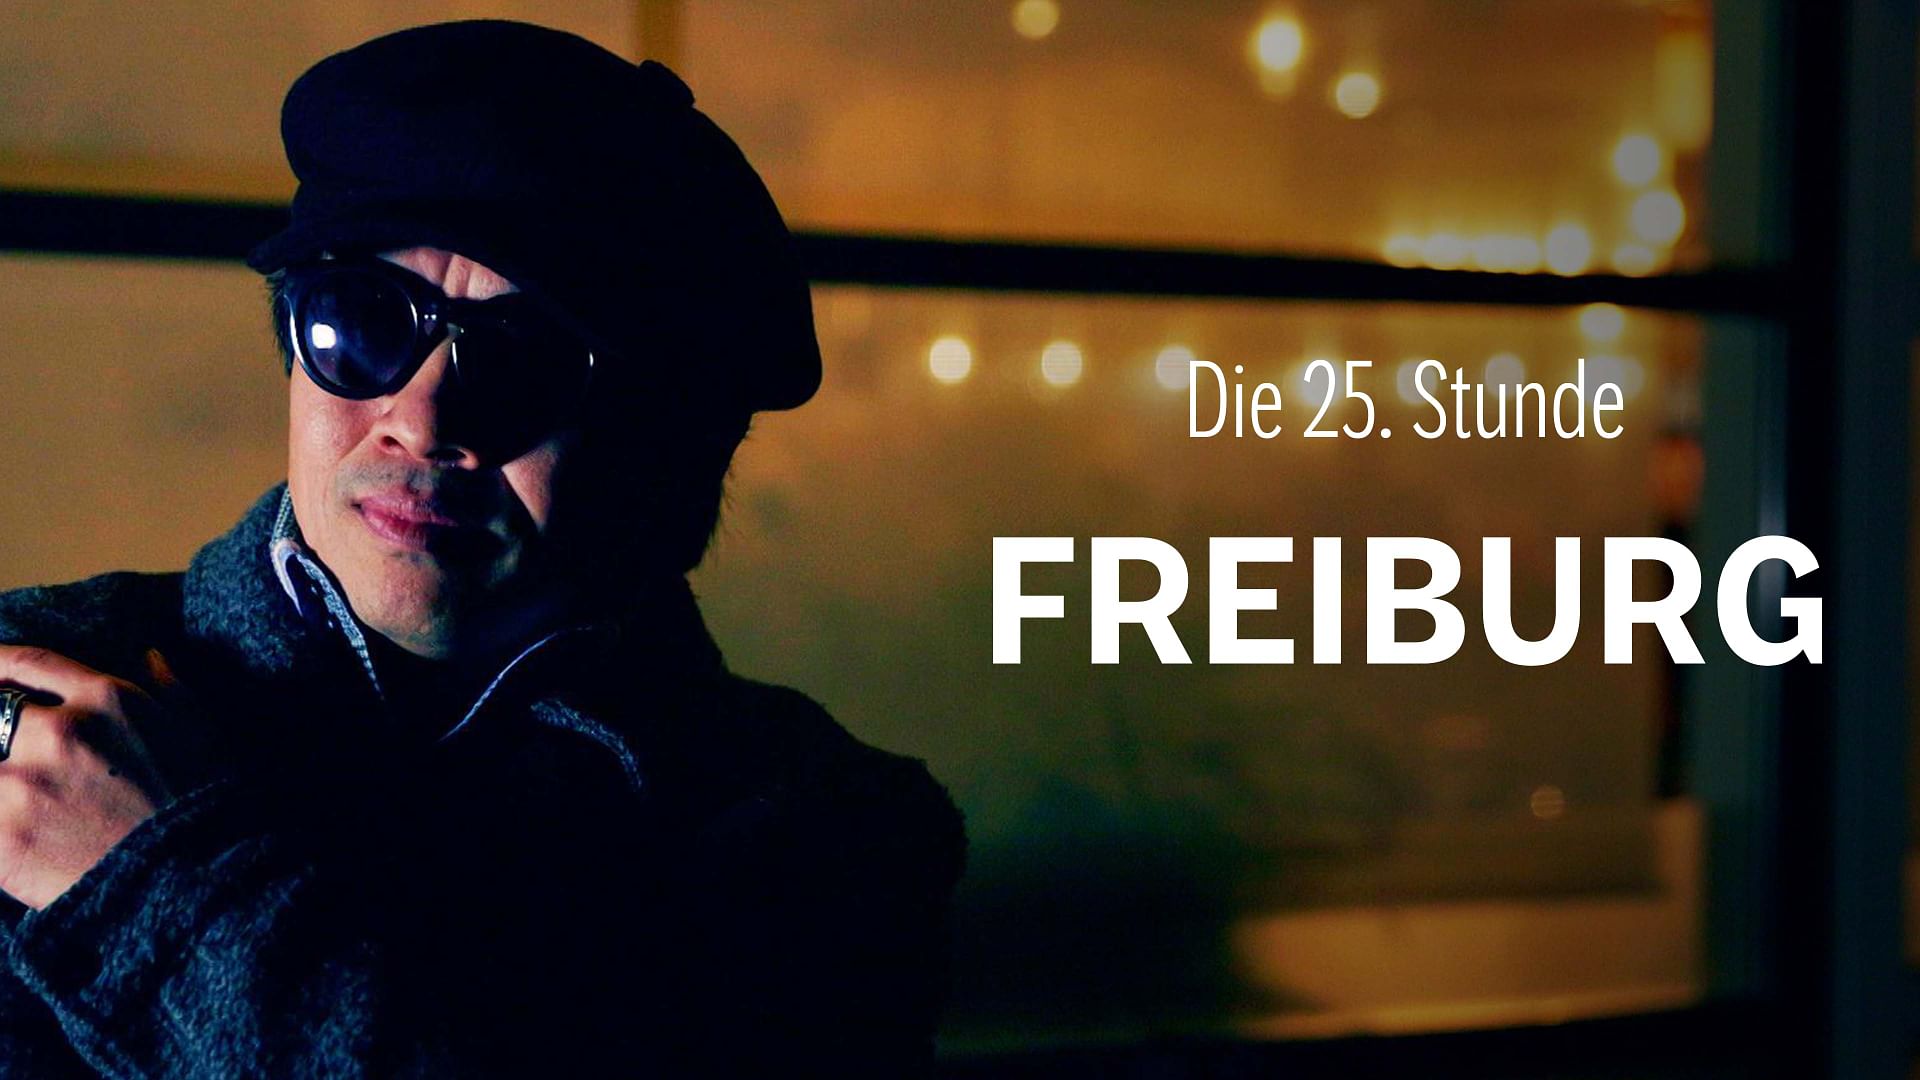 Die 25. Stunde - Freiburg